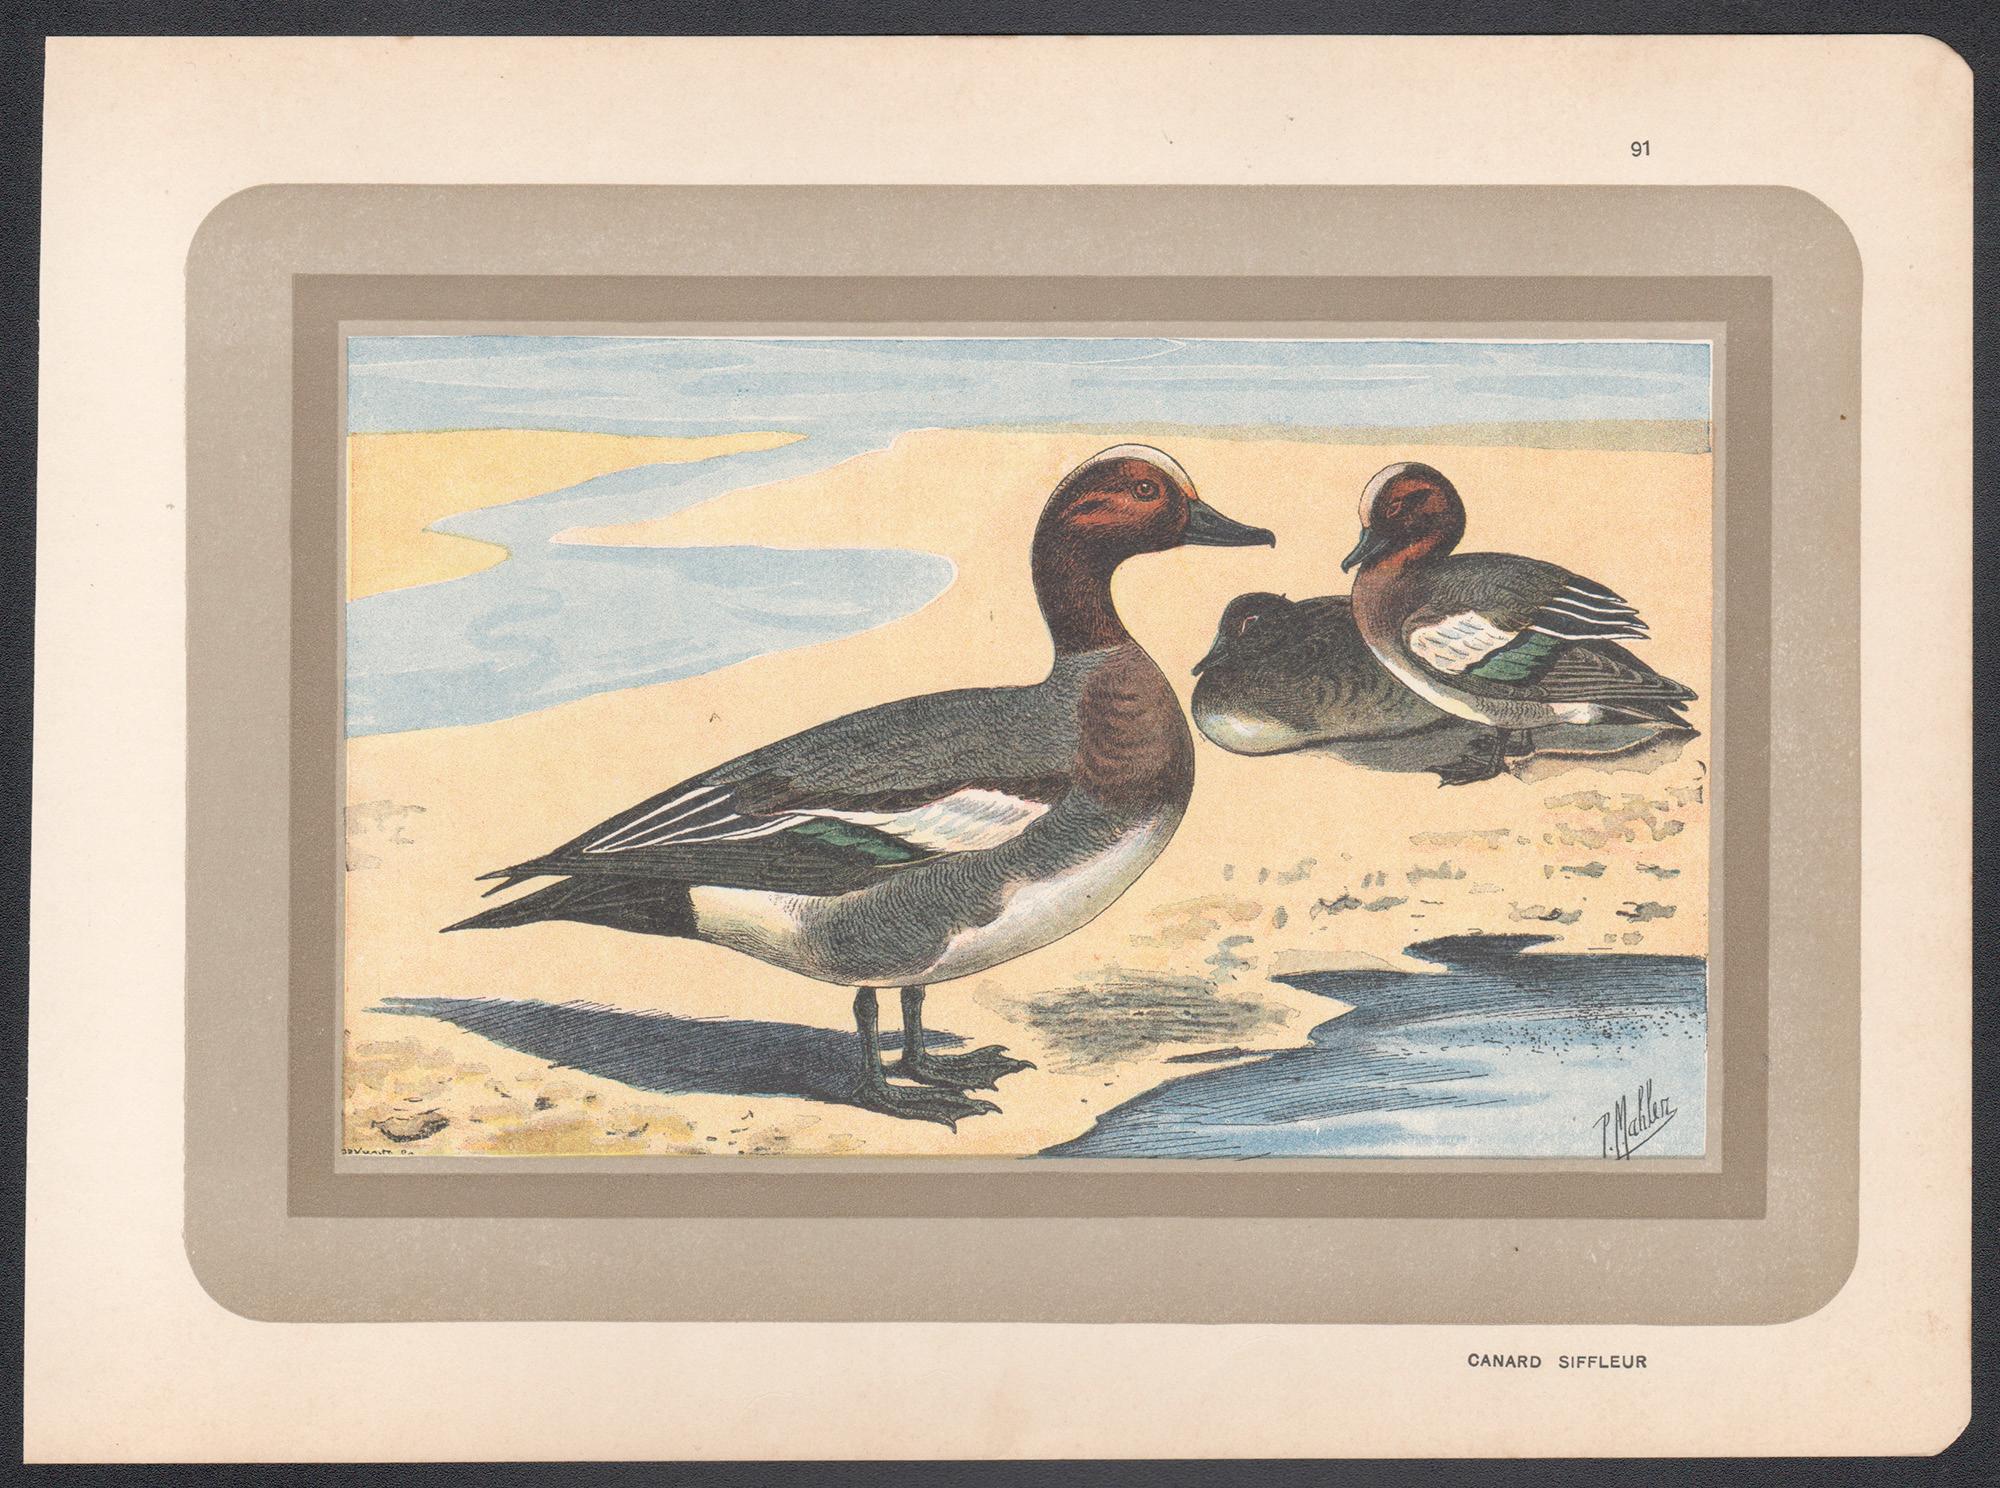 Wigeon eurasien, illustration d'art de canard, oiseau antique français. - Print de P. Mahler